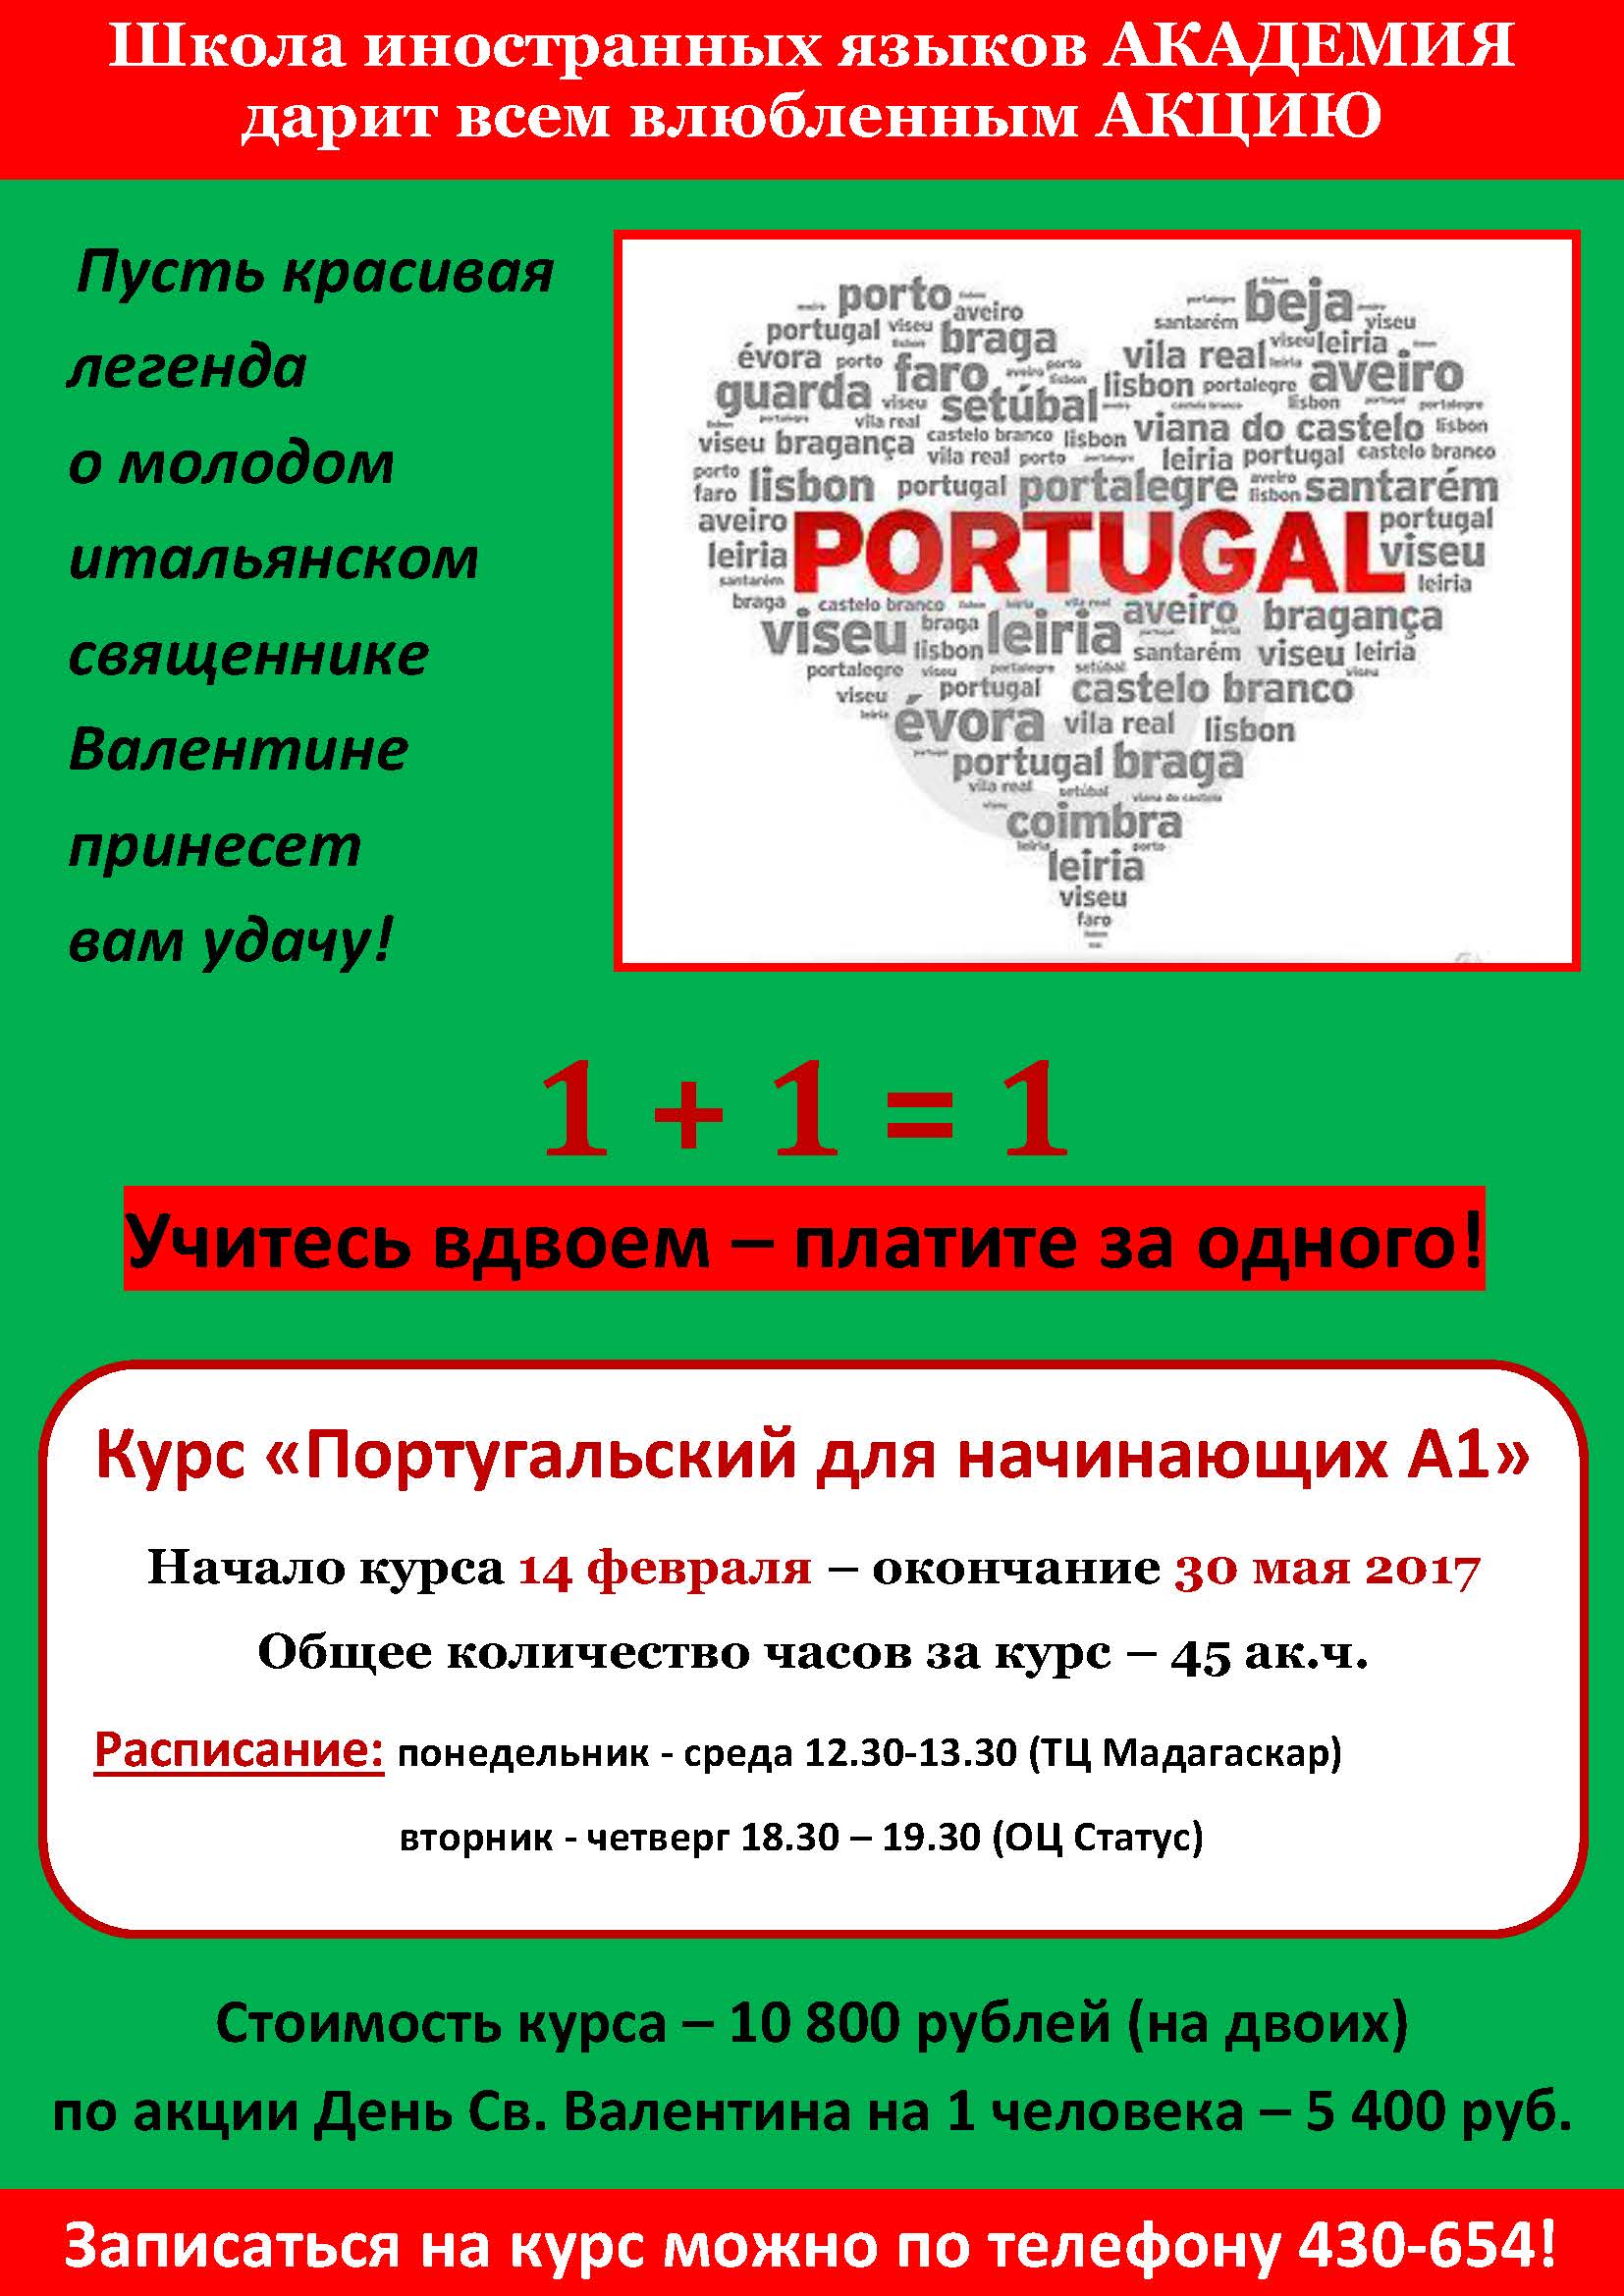 Aktciia Sv. Valentin Portugalskii iazyk